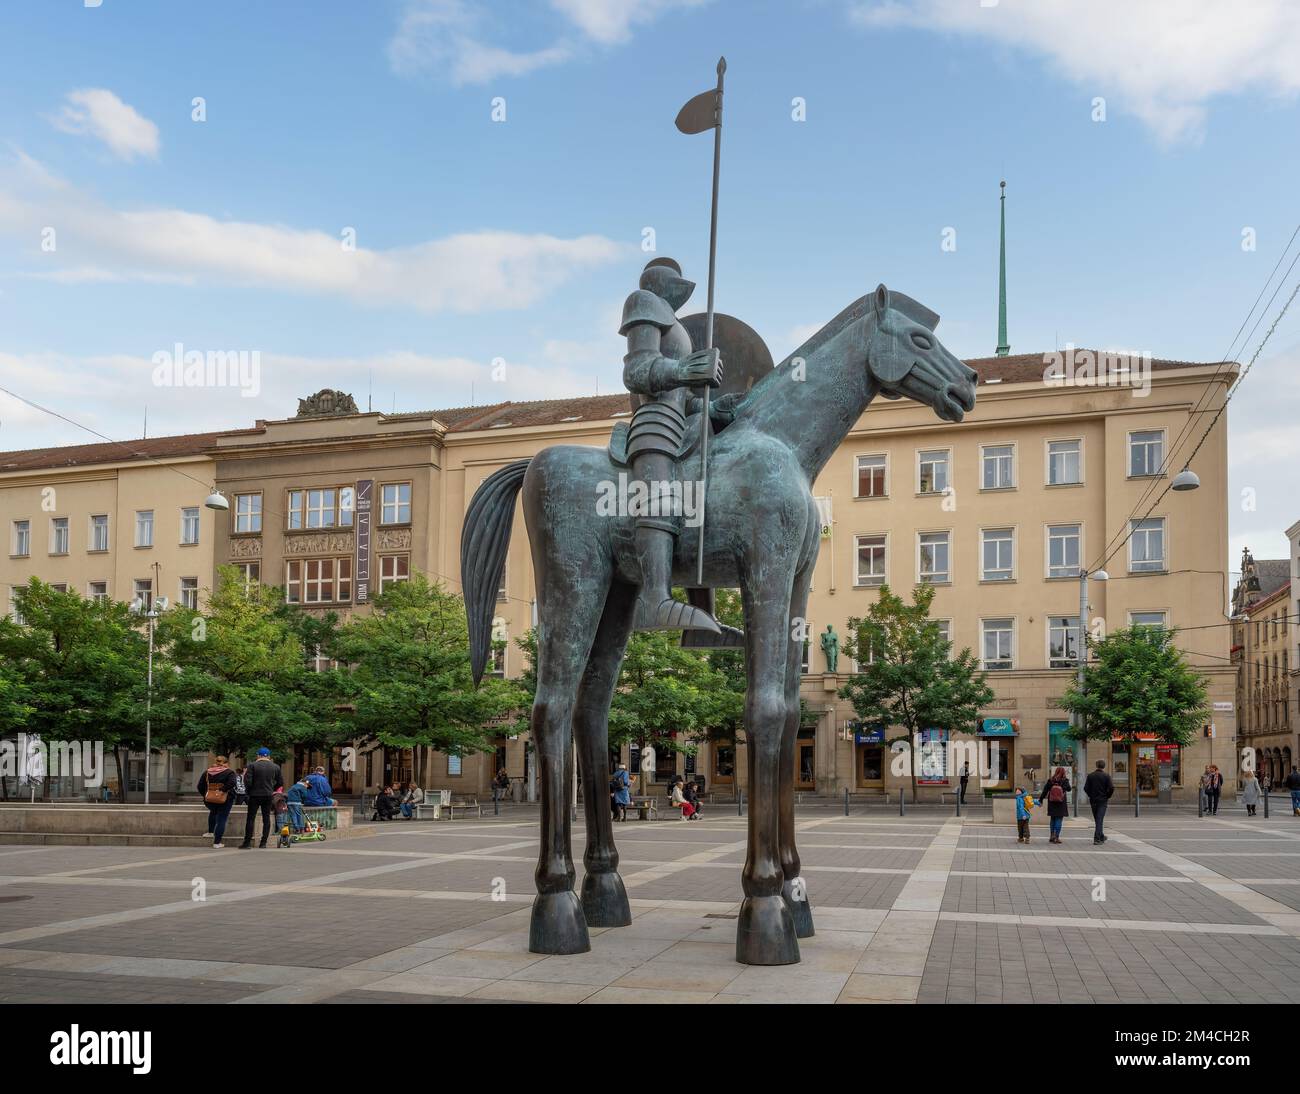 Mutige Statue - Reiterstatue des mährischen Jobstums auf dem Mährischen Platz - Brünn, Tschechische Republik Stockfoto